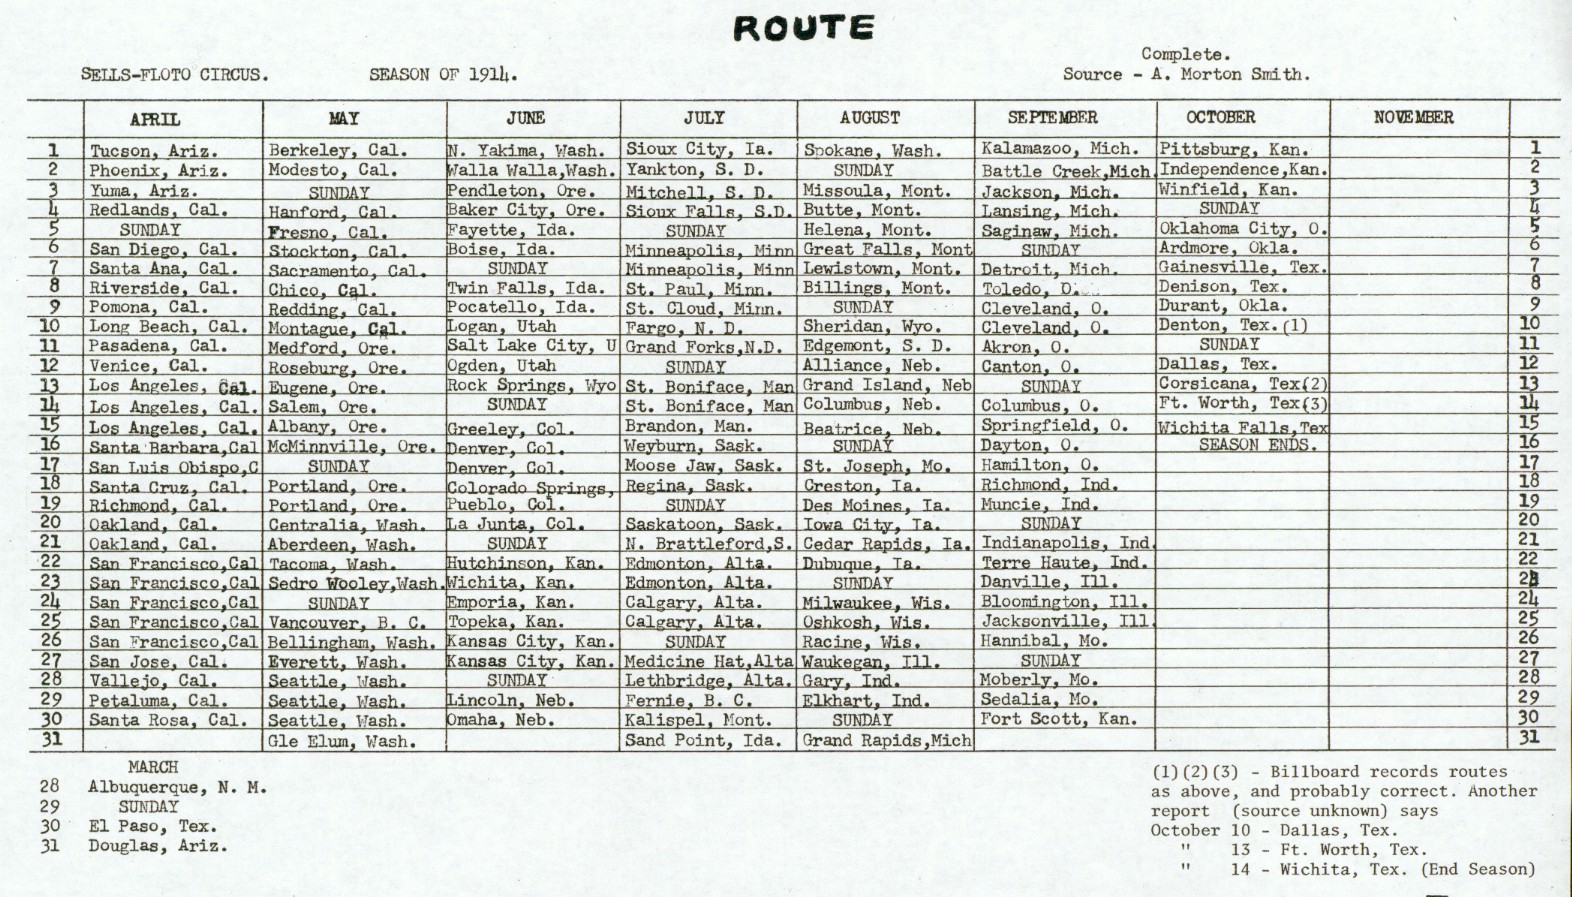 1914 Season Route, Sells-Floto Circus